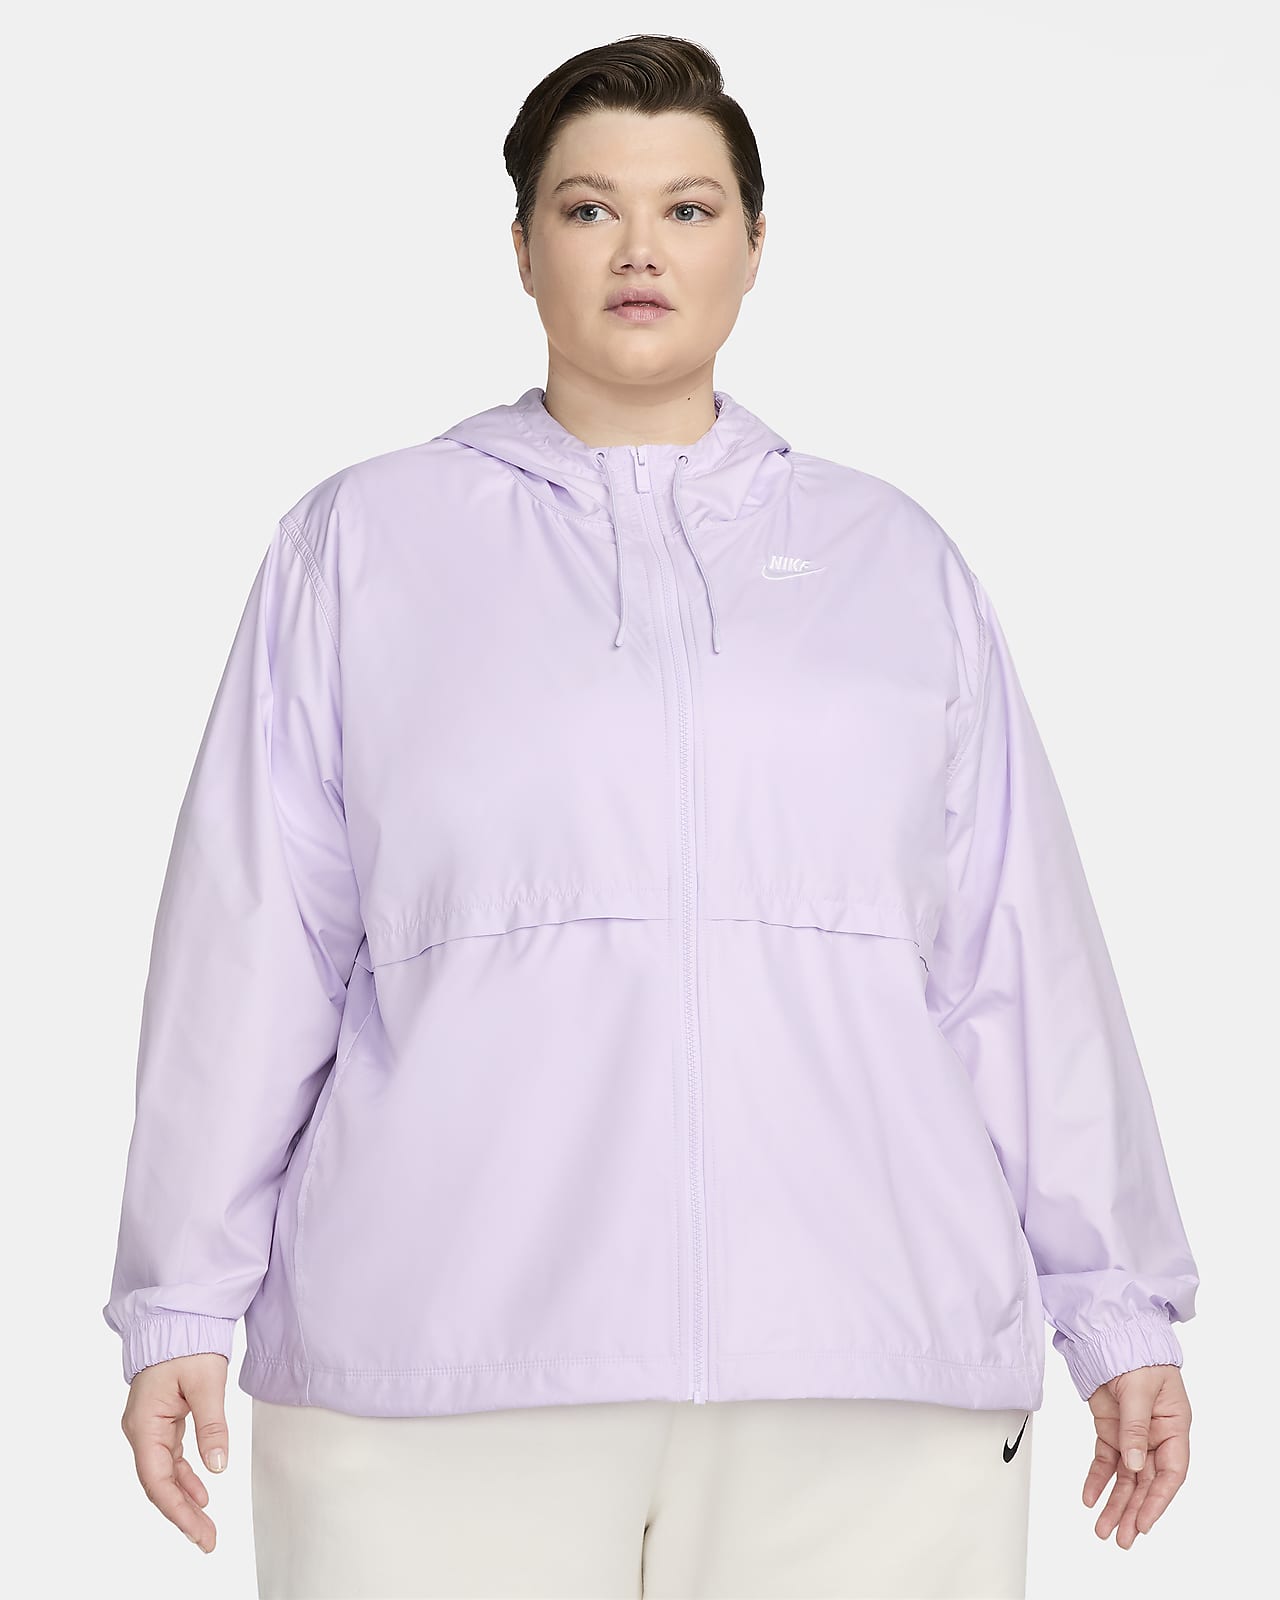 Nike Sportswear Essential Repel Women's Woven Jacket (Plus Size).